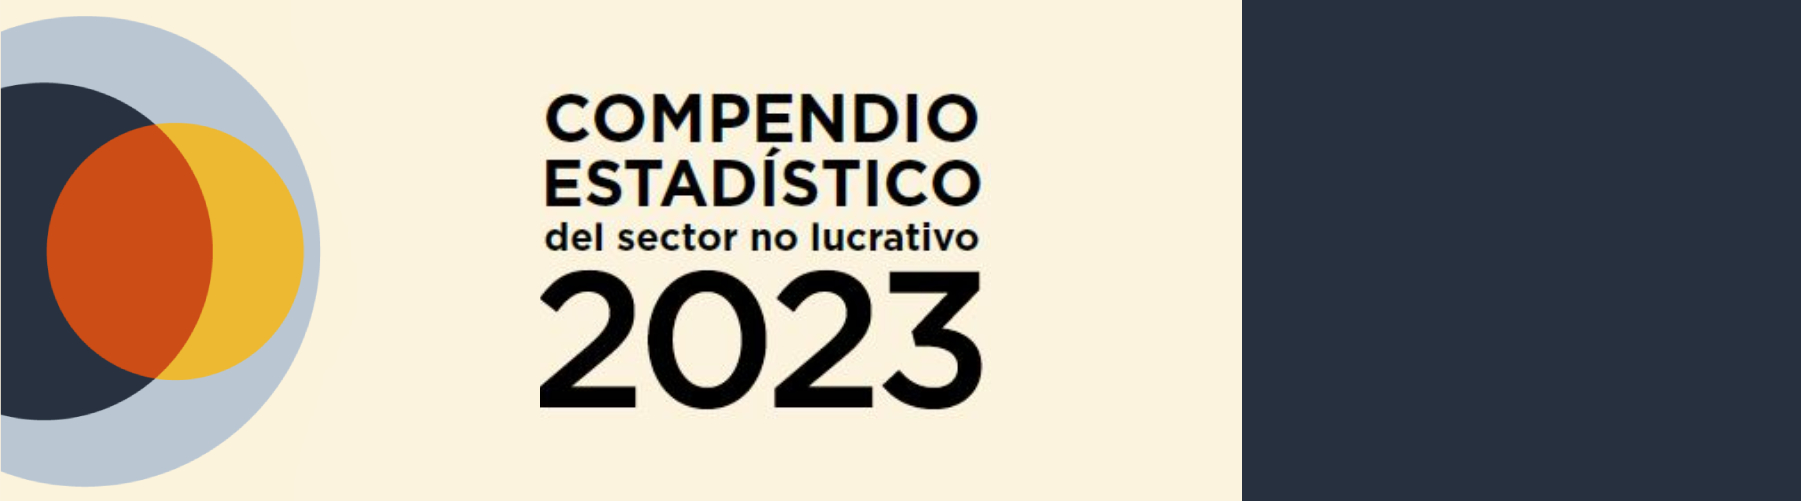 Descarga el Compendio Estadístico del sector no lucrativo y conoce la información más relevante sobre el quehacer de las OSC en México